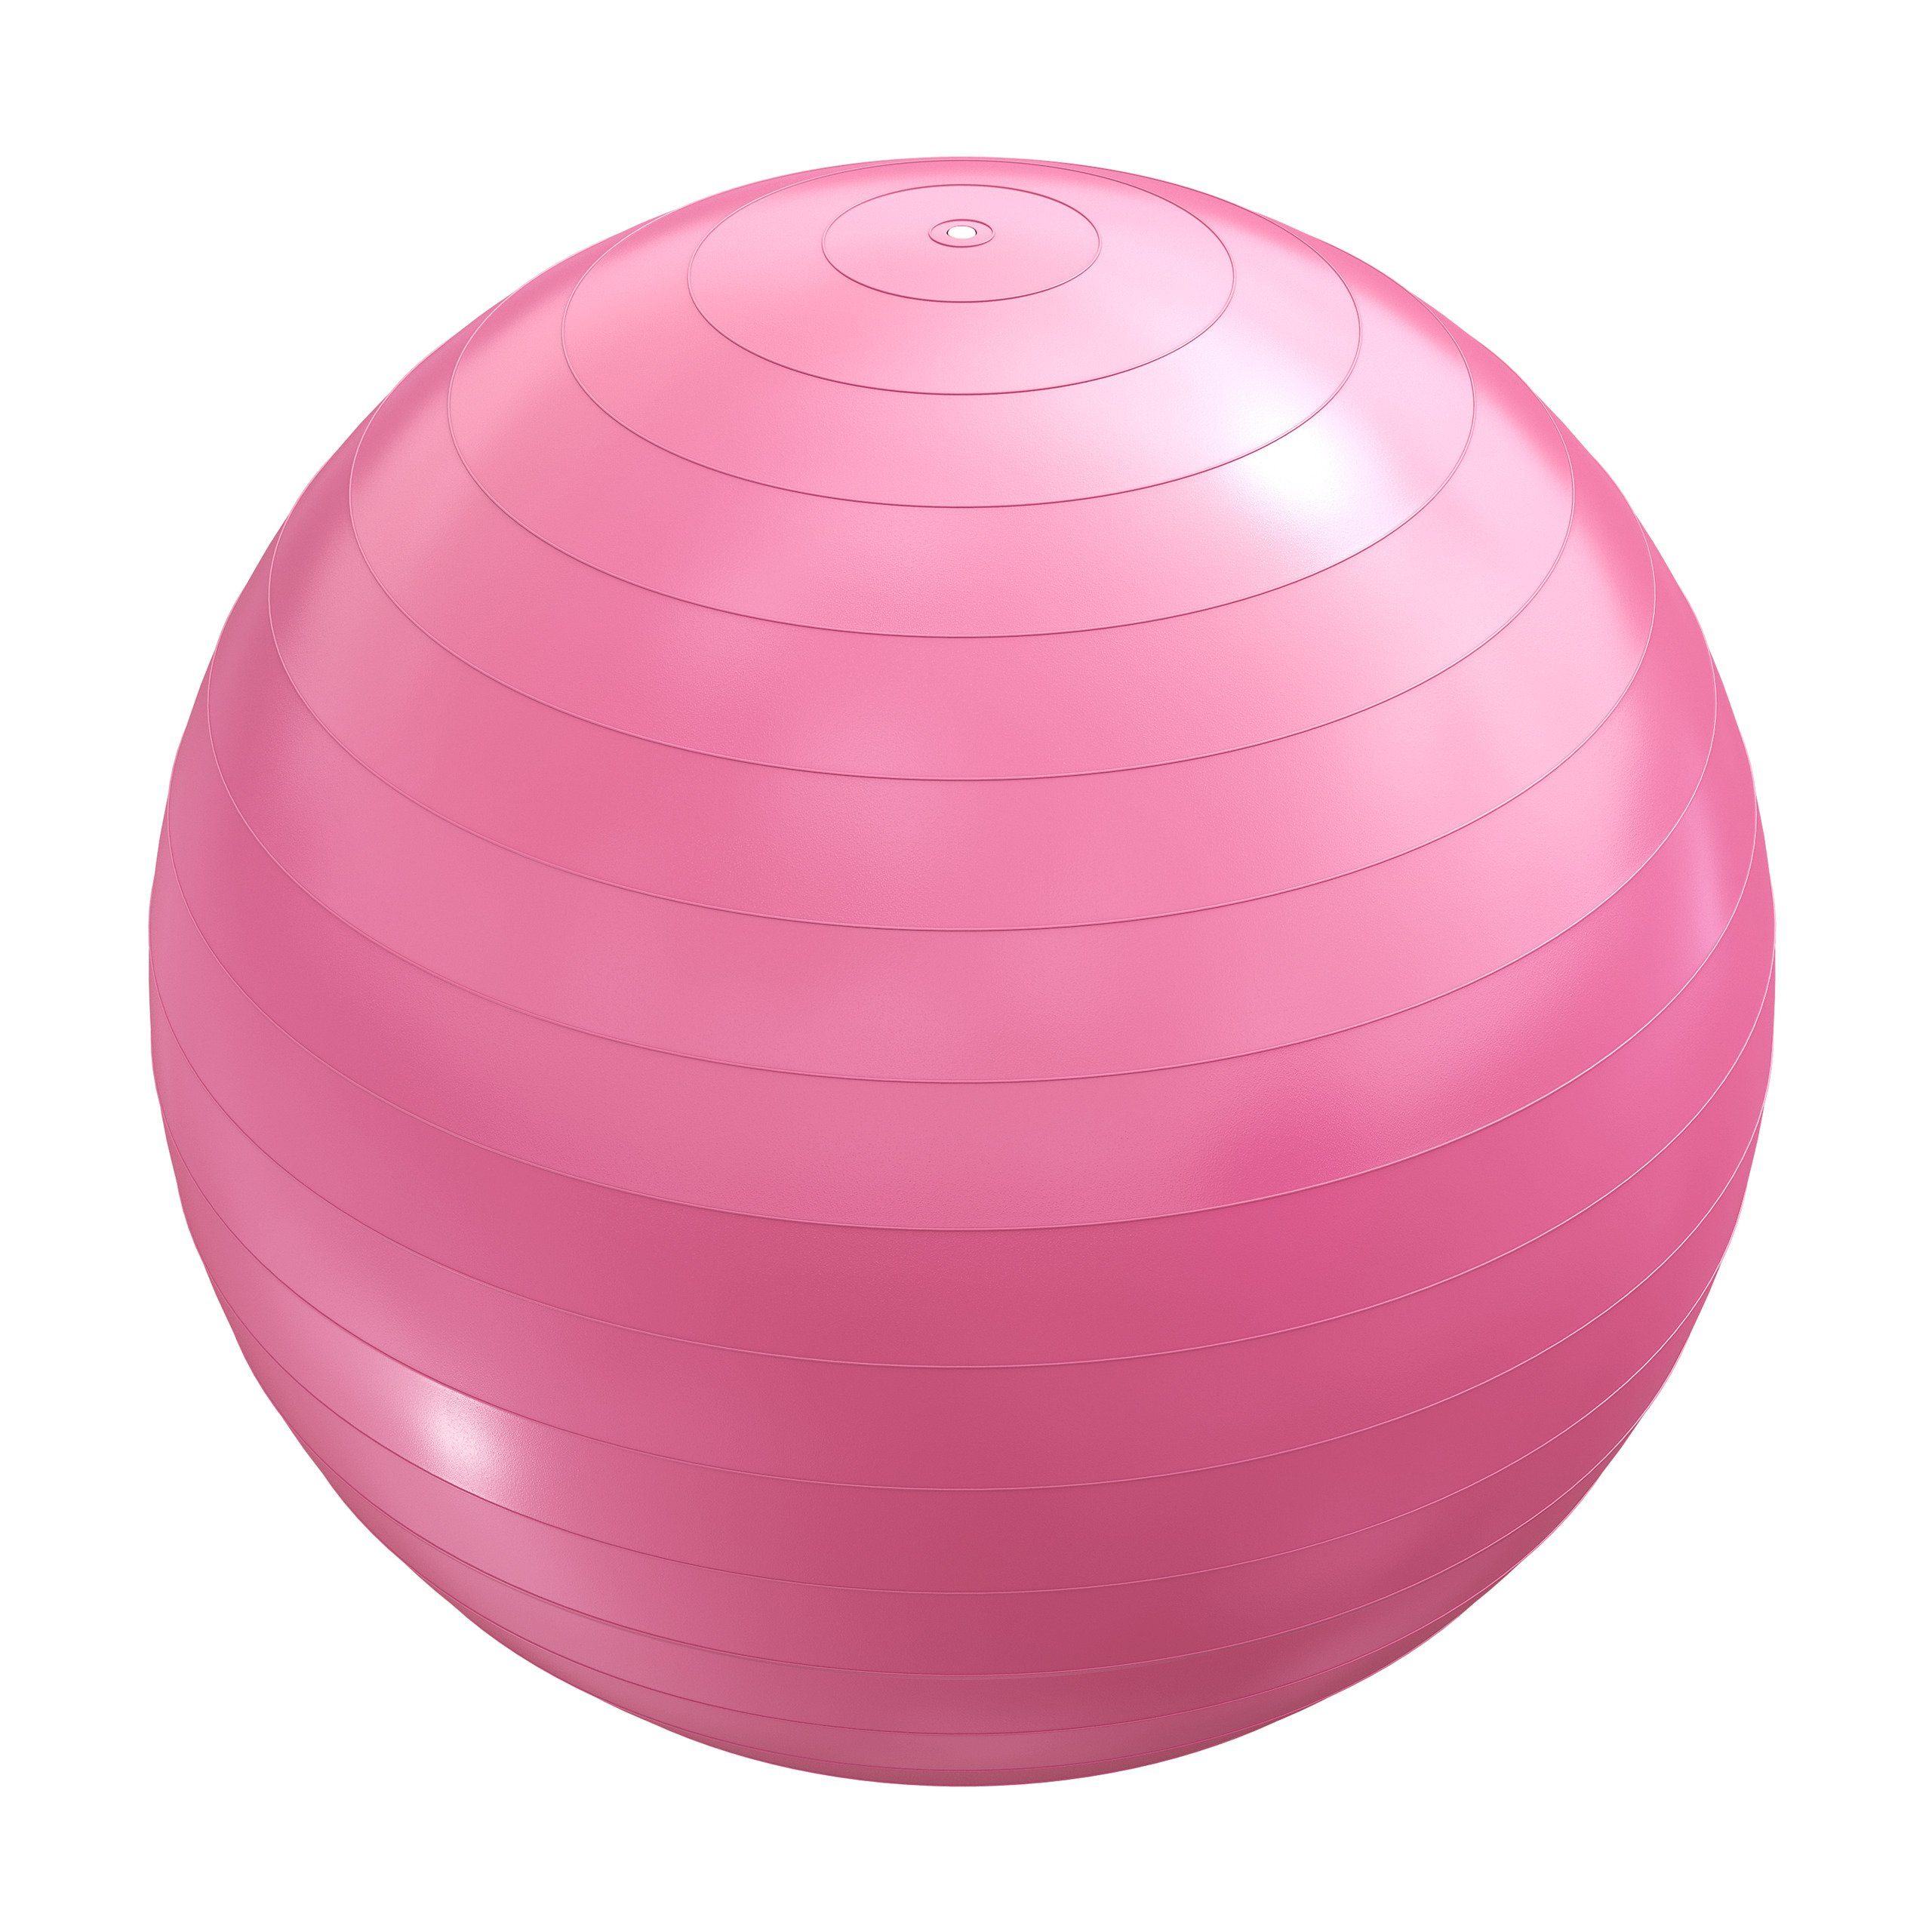 GORILLA SPORTS Gymnastikball 55cm/65cm/75cm, bis 500kg Belastbar, Anti-Burst, Farbwahl -Fitnessball Pink